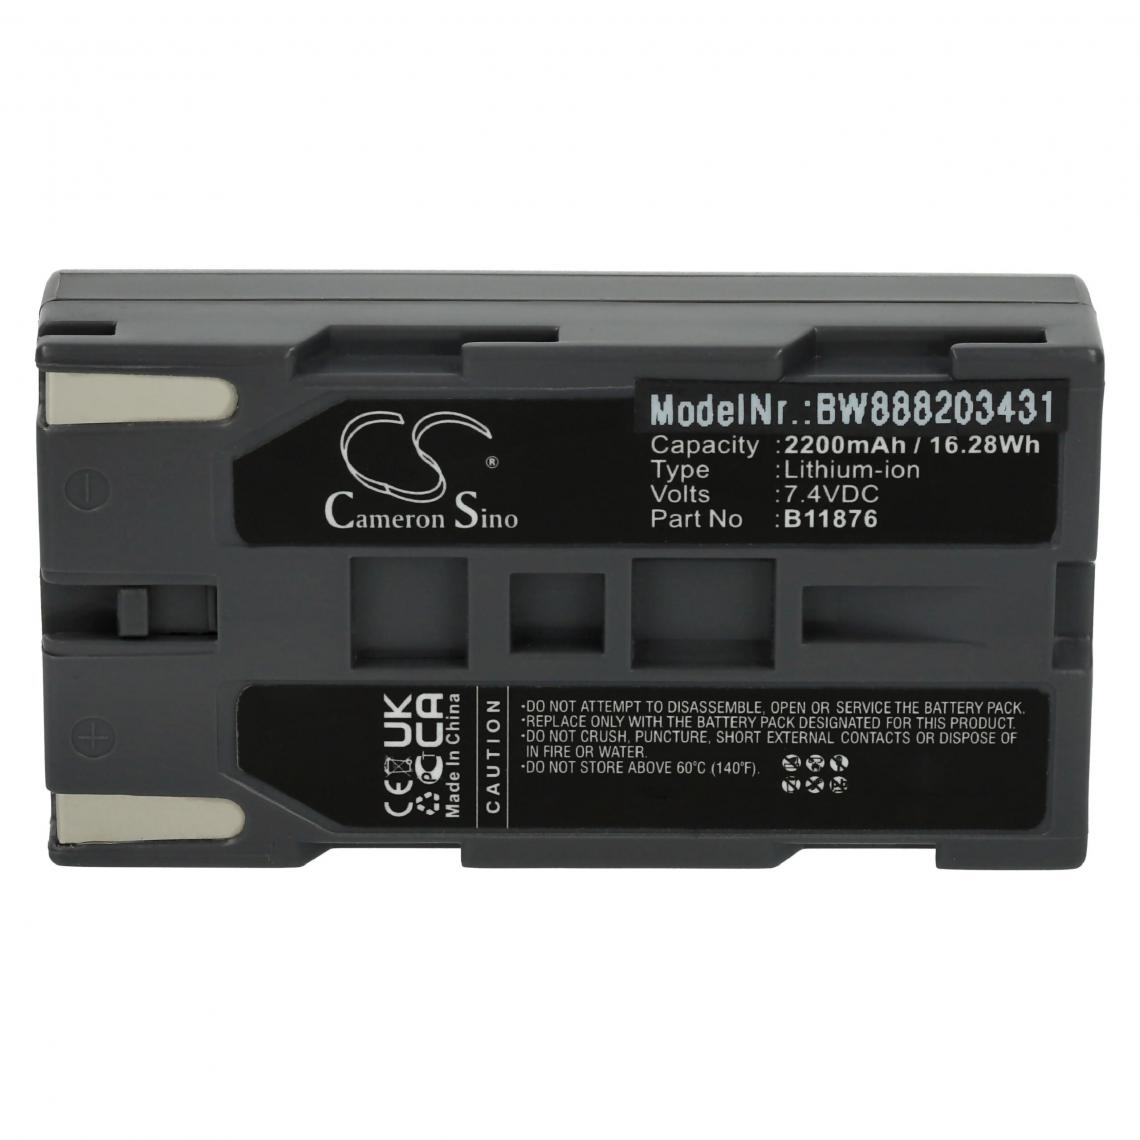 Vhbw - vhbw Batterie compatible avec TSI Certifier FA Plus Testsystem, Ventilator Test System appareil médical (2200mAh, 7,4V, Li-ion) - Piles spécifiques